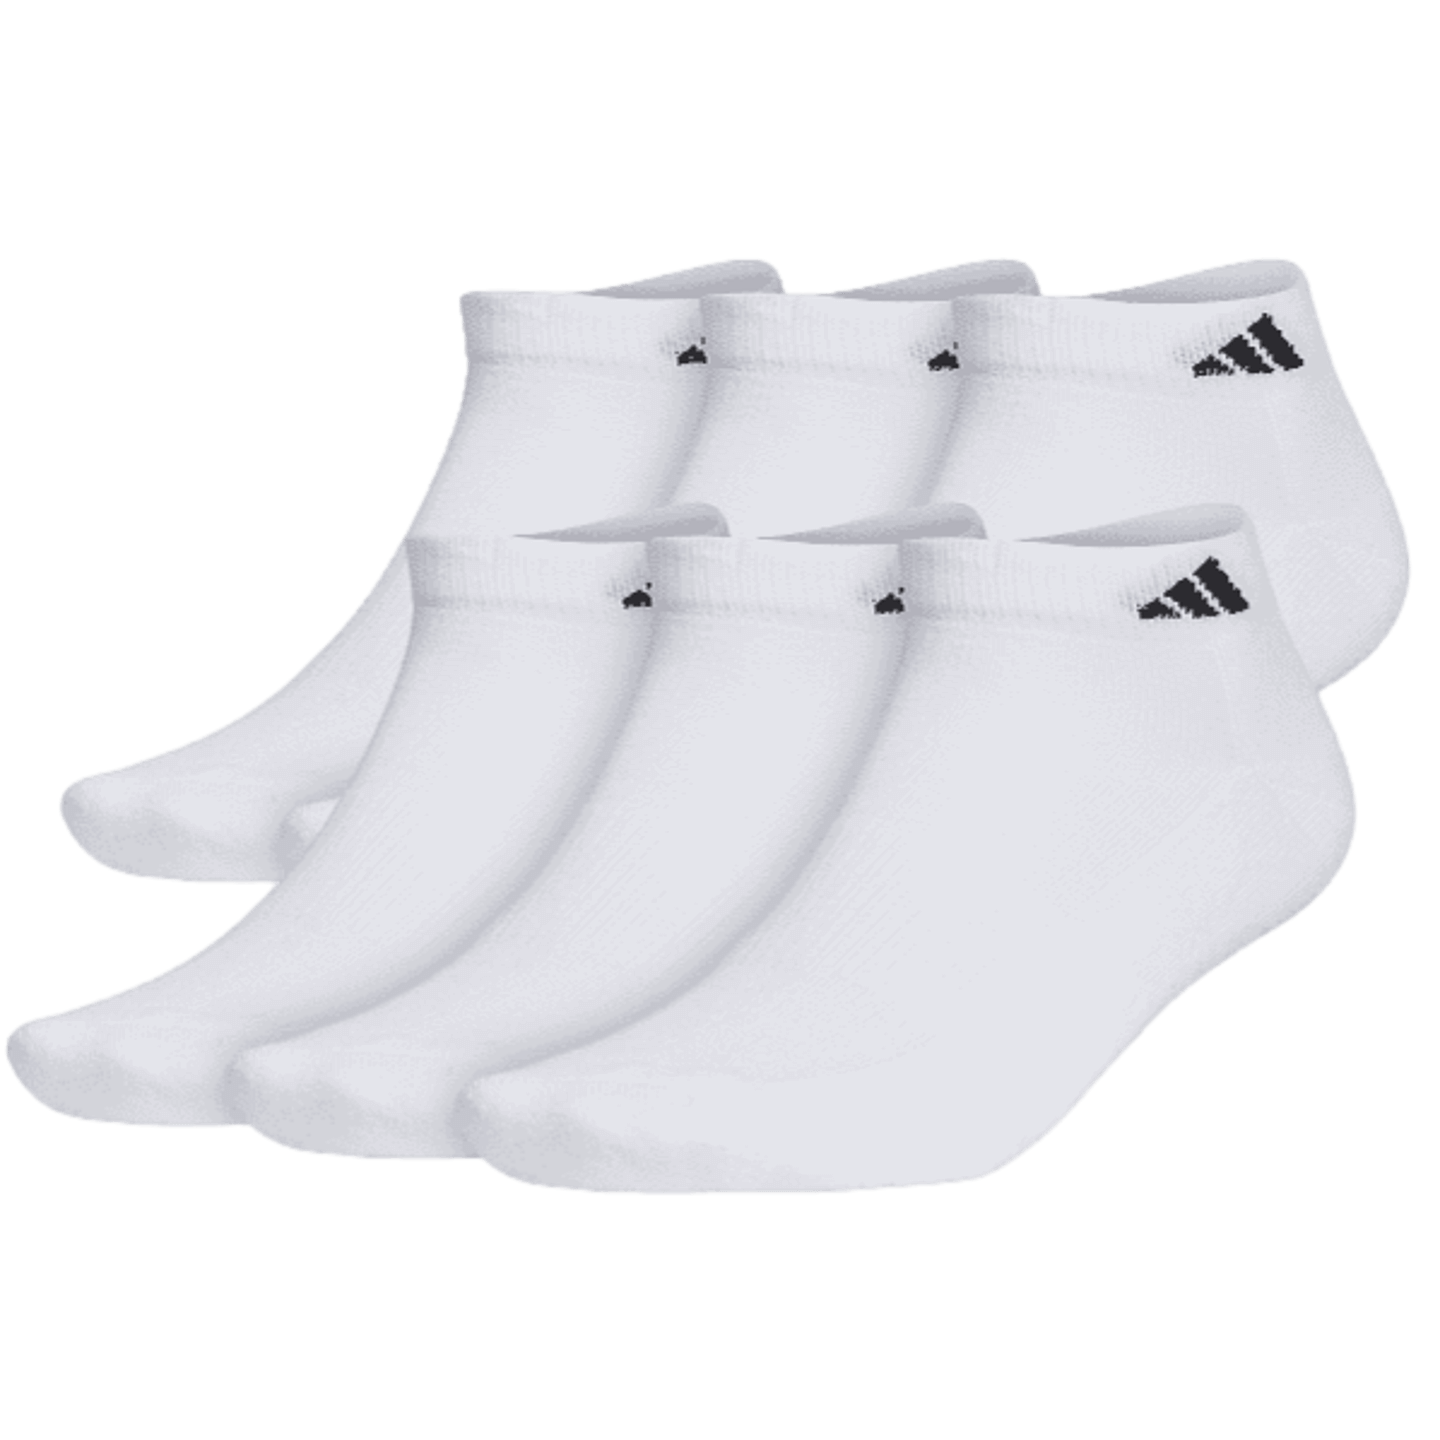 Adidas Athletic Cushioned Low-Cut Socks (6 pk)